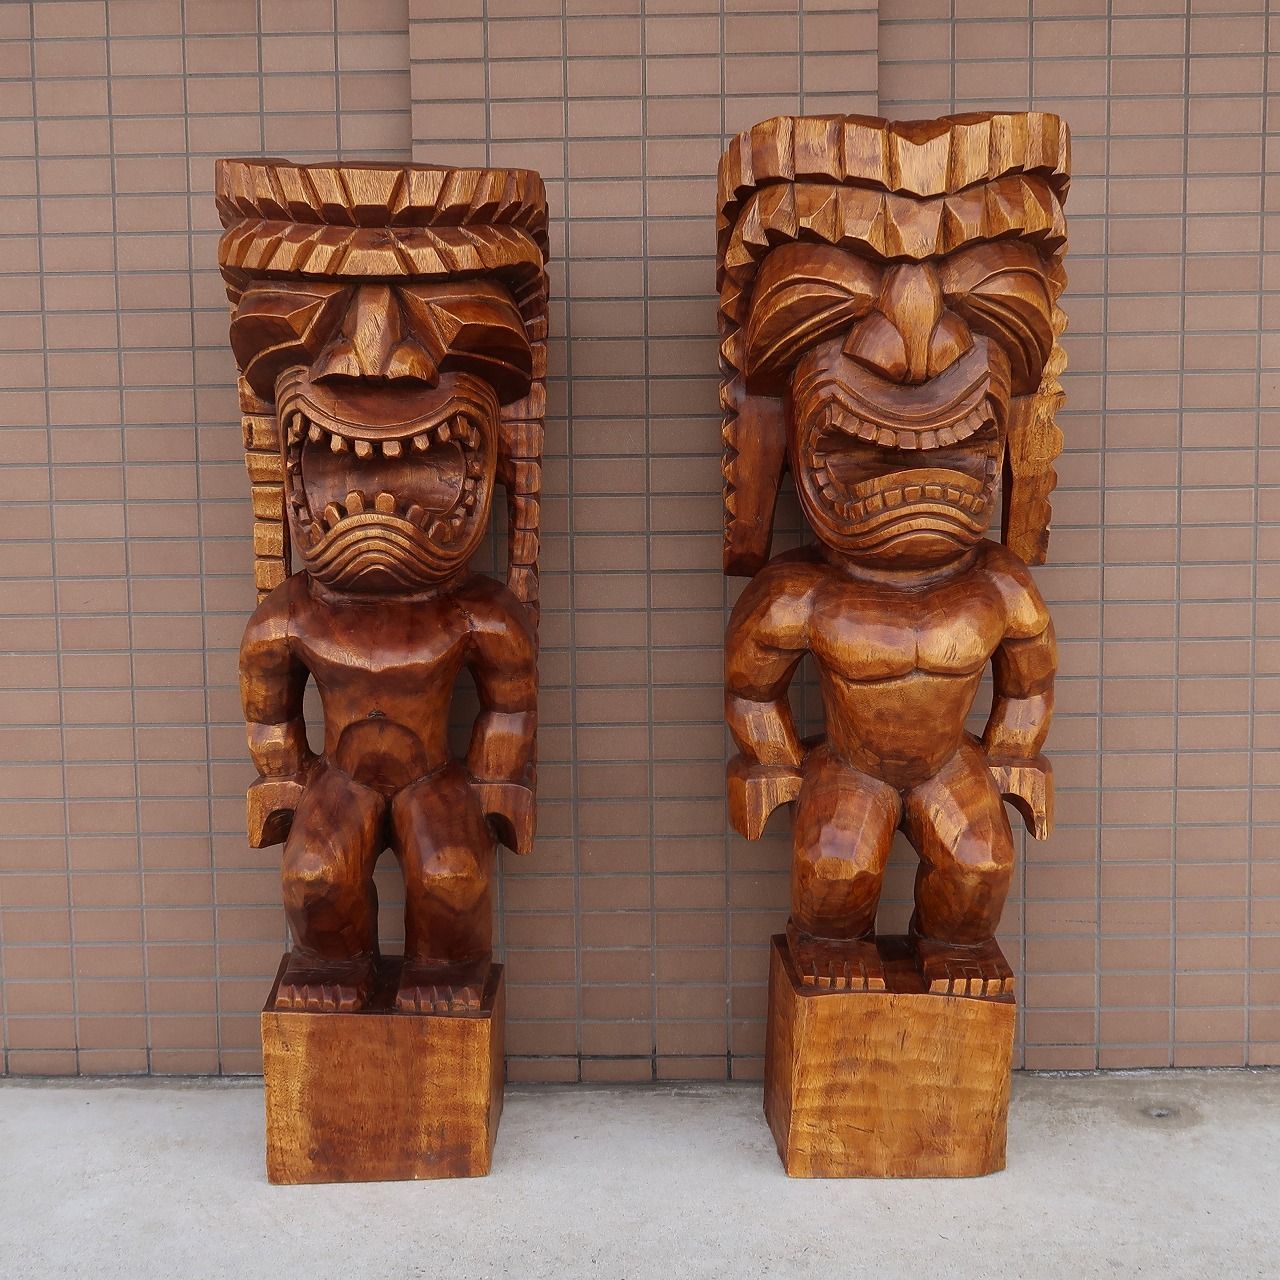 ティキの木彫り ティキ クー TIKI KU 120cm 木製スワール無垢材 TIKI木彫り ティキ像 チィキ像 戦いの神 オブジェ ハワイの神様  ハワイアン雑貨 ハワイの置物 Hawaiian 1m20cm 350283 - メルカリ